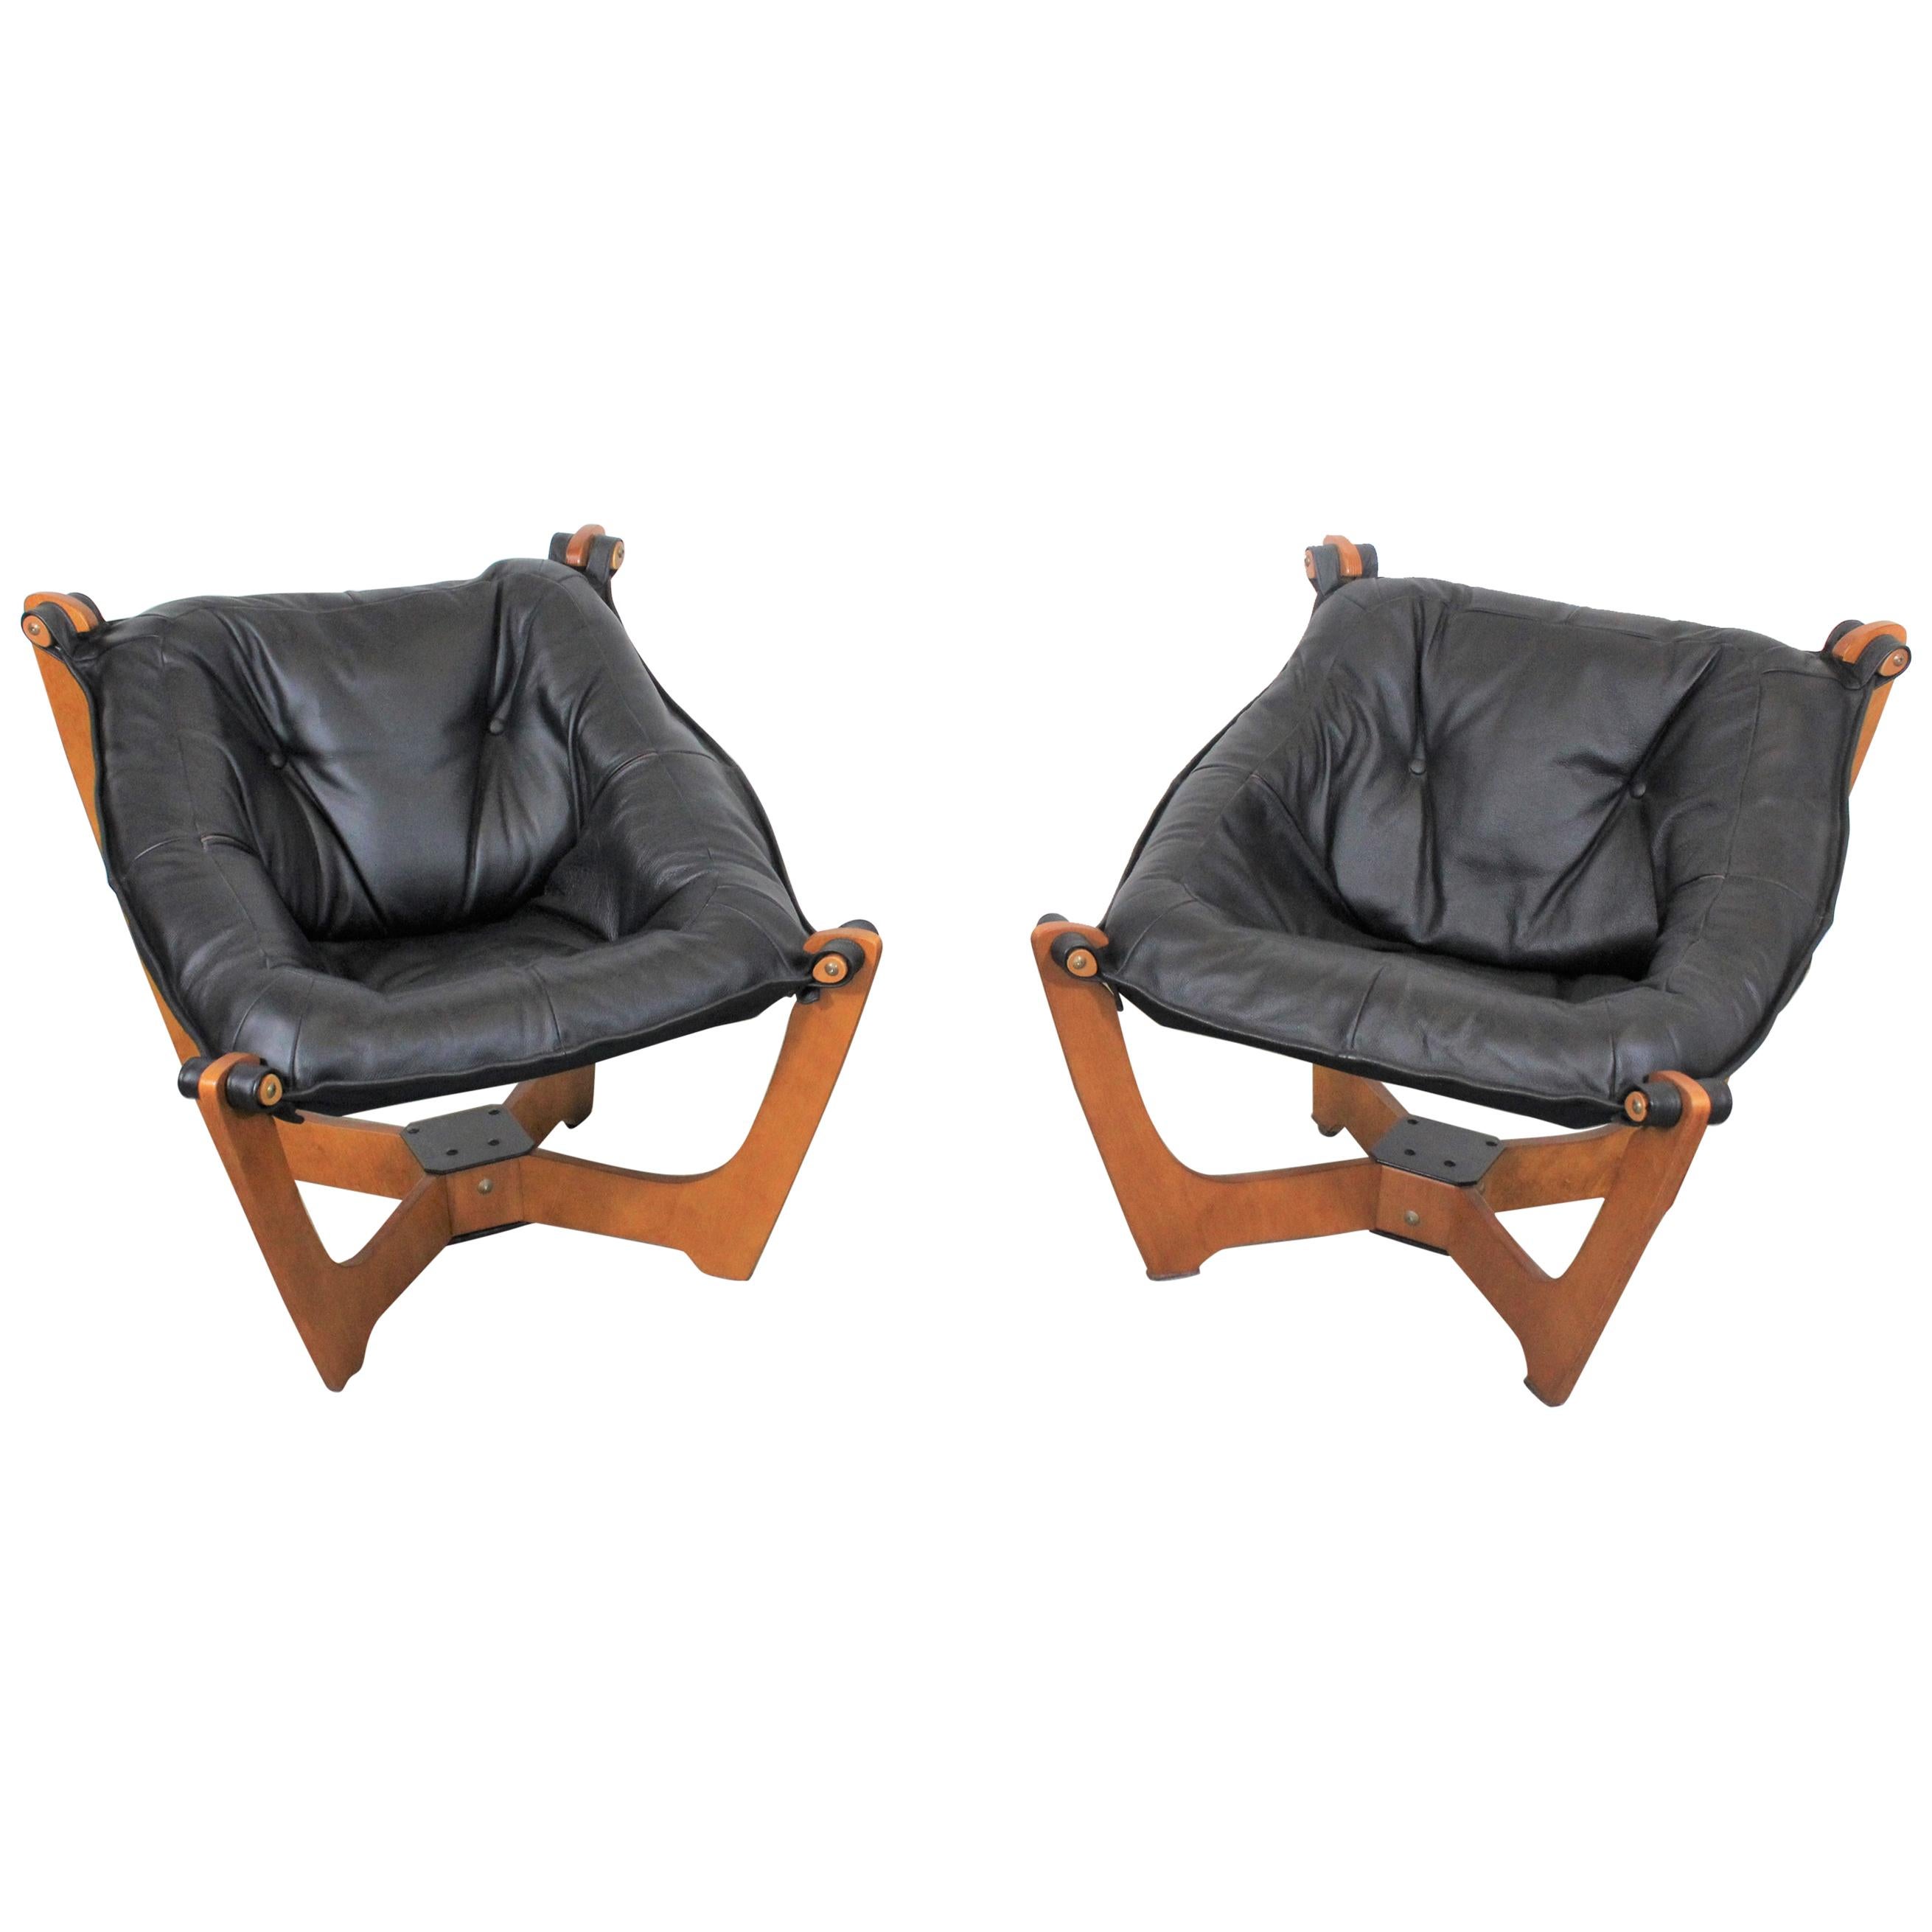 Pair of Midcentury Danish Modern Odd Knutsen Lounge Chairs